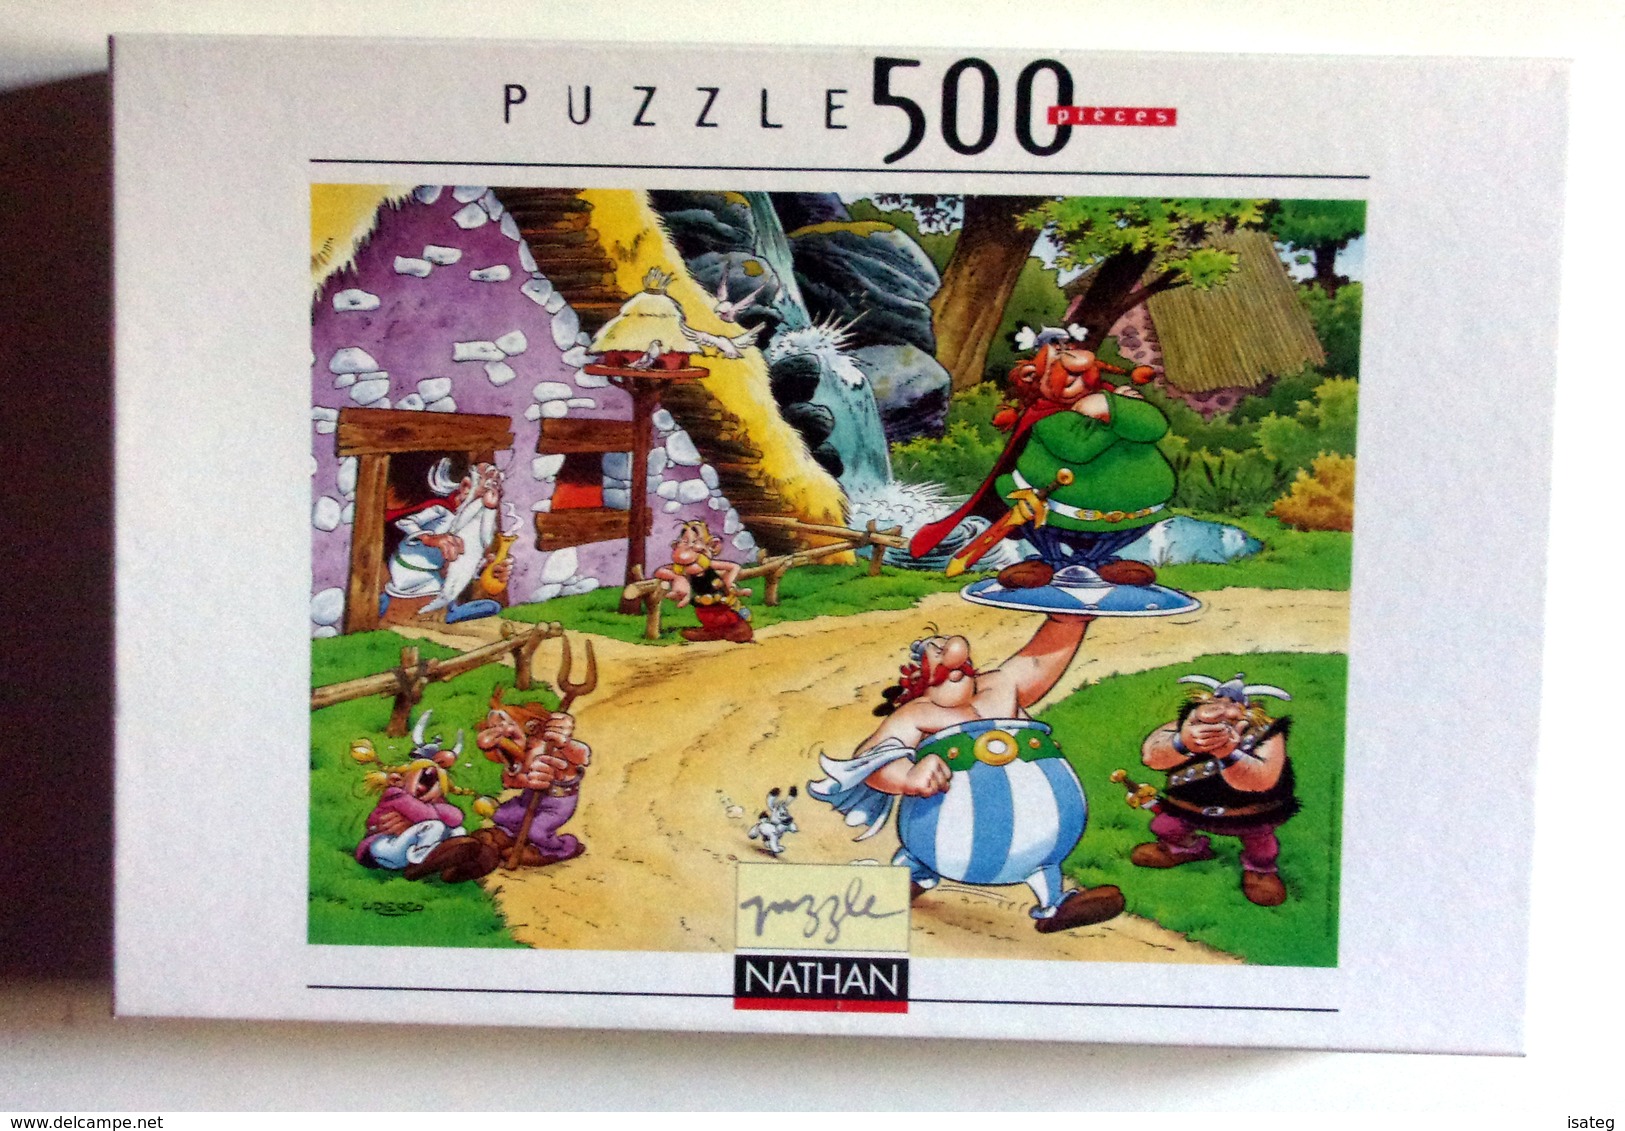 Puzzle Vintage Obelix Porteur - 500 Pieces - Nathan 2001 - Puzzles